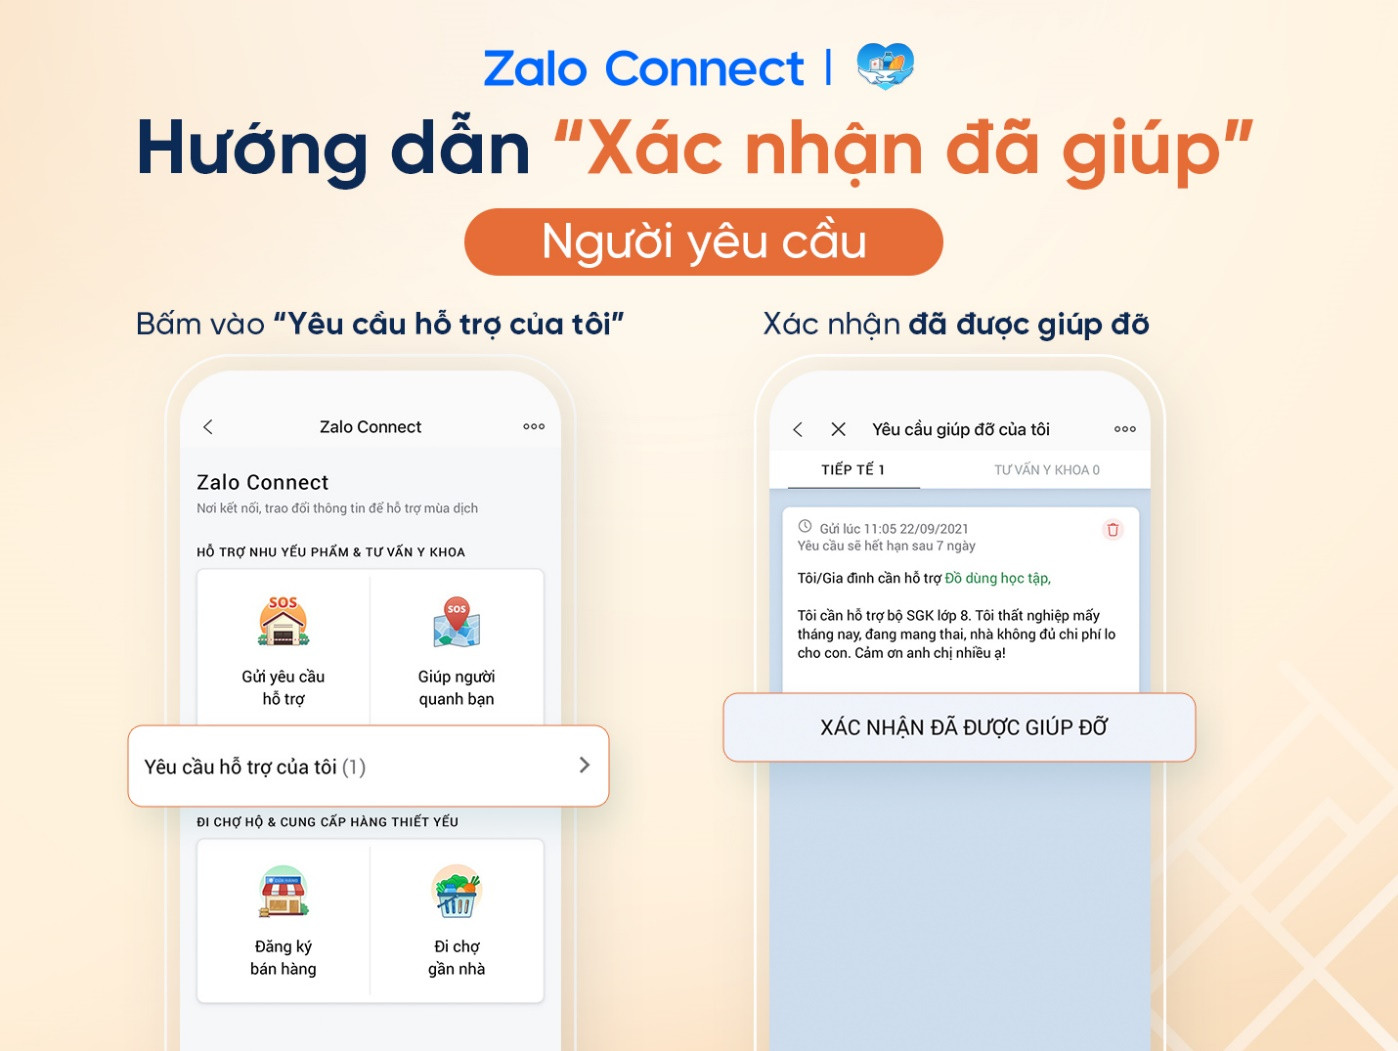 Hỗ trợ đồ dùng học tập cho học sinh qua Zalo Connect - Ảnh 4.